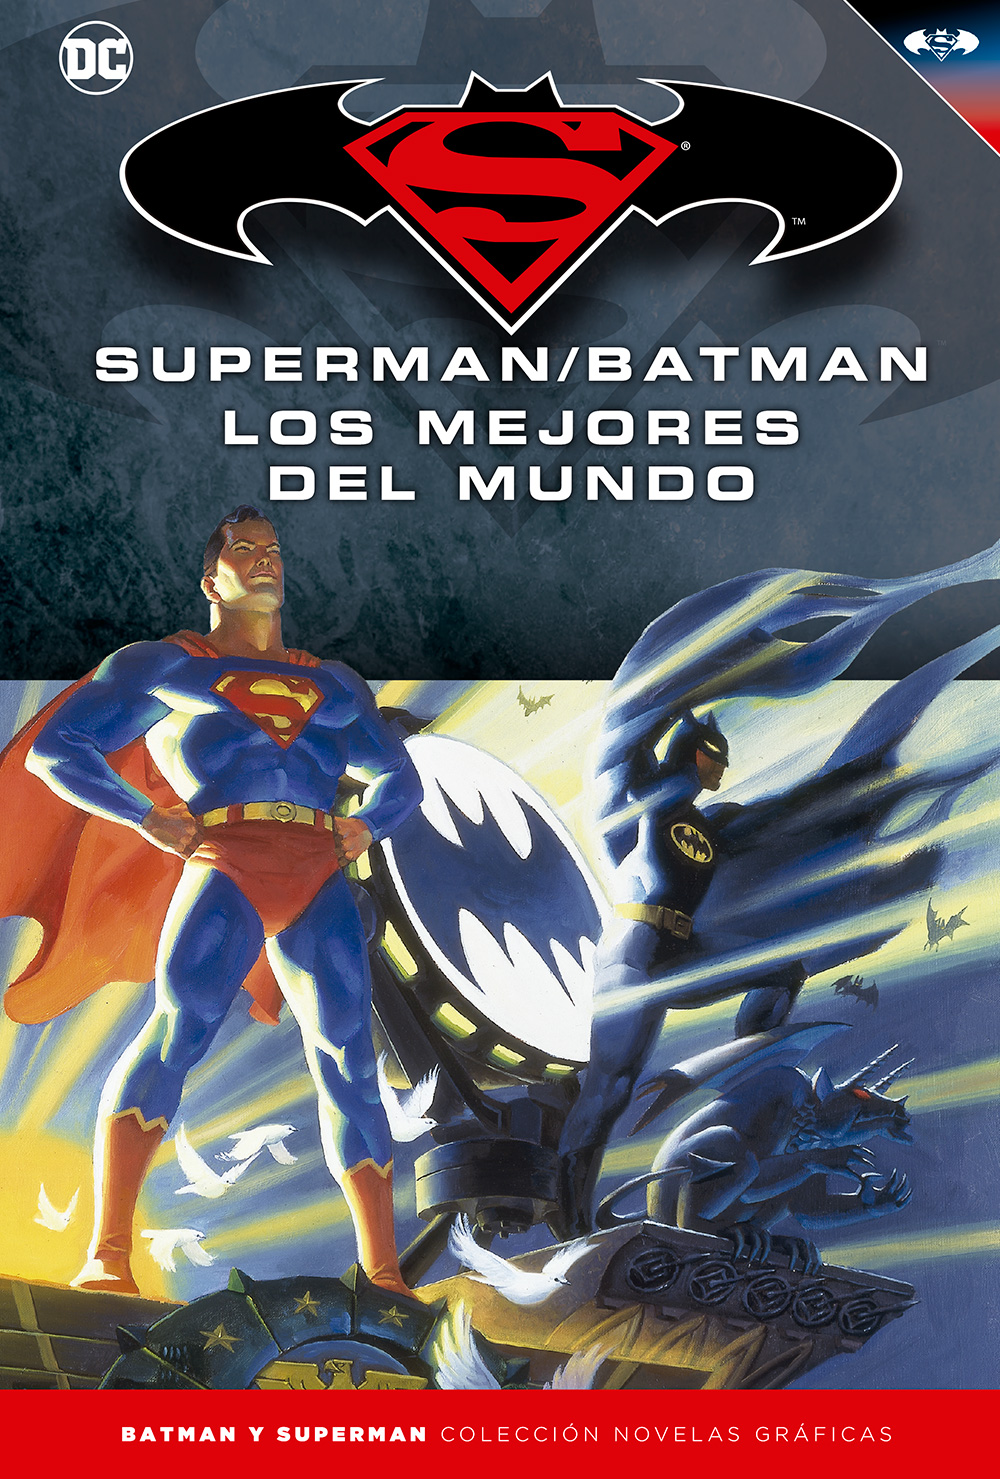 1-5 - [DC - Salvat] Batman y Superman: Colección Novelas Gráficas - Página 7 Portada_BMSM_16_LosMejoresdelMundo